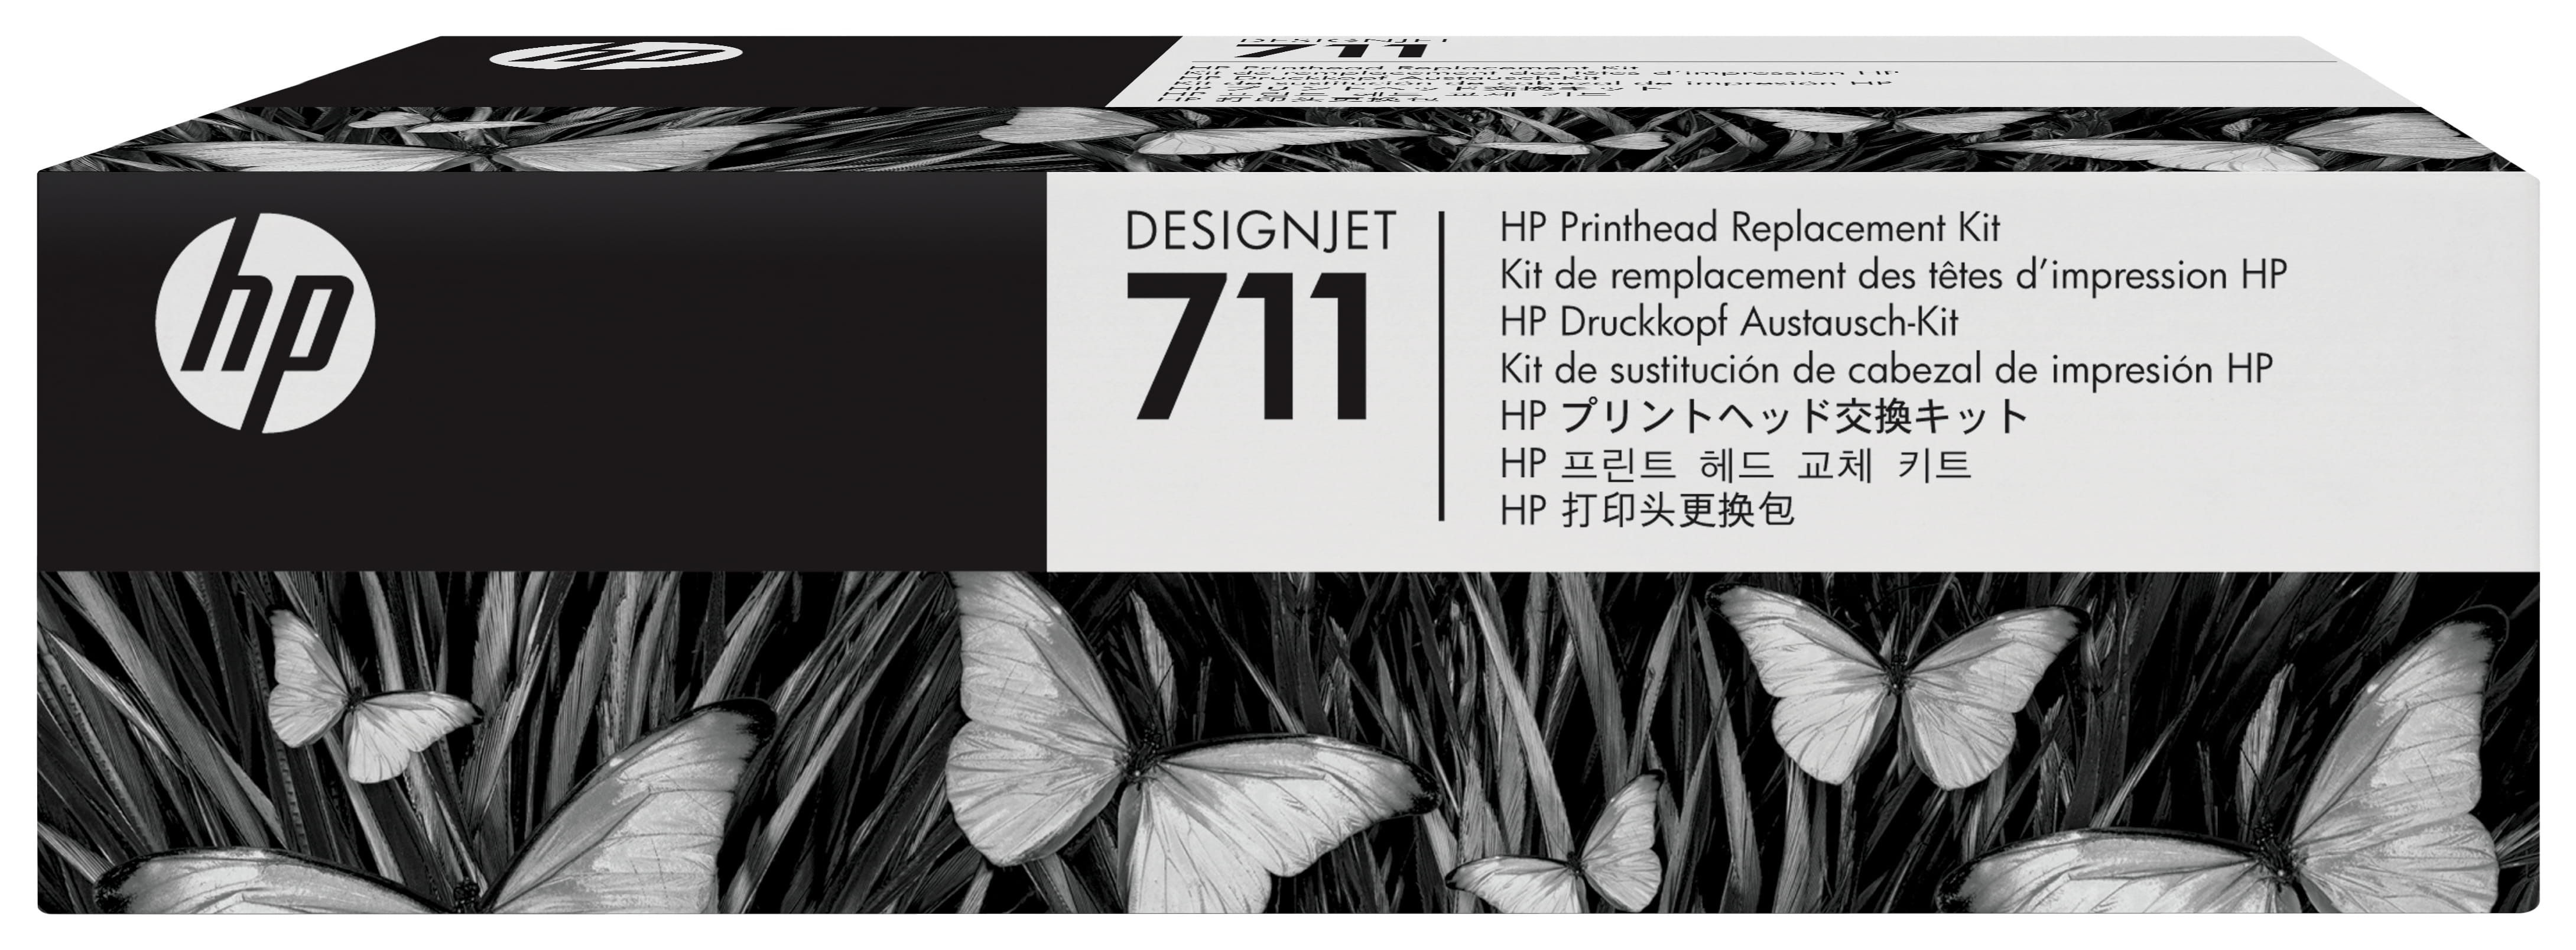 HP 711 - Schwarz, Gelb, Cyan, Magenta - Druckkopf